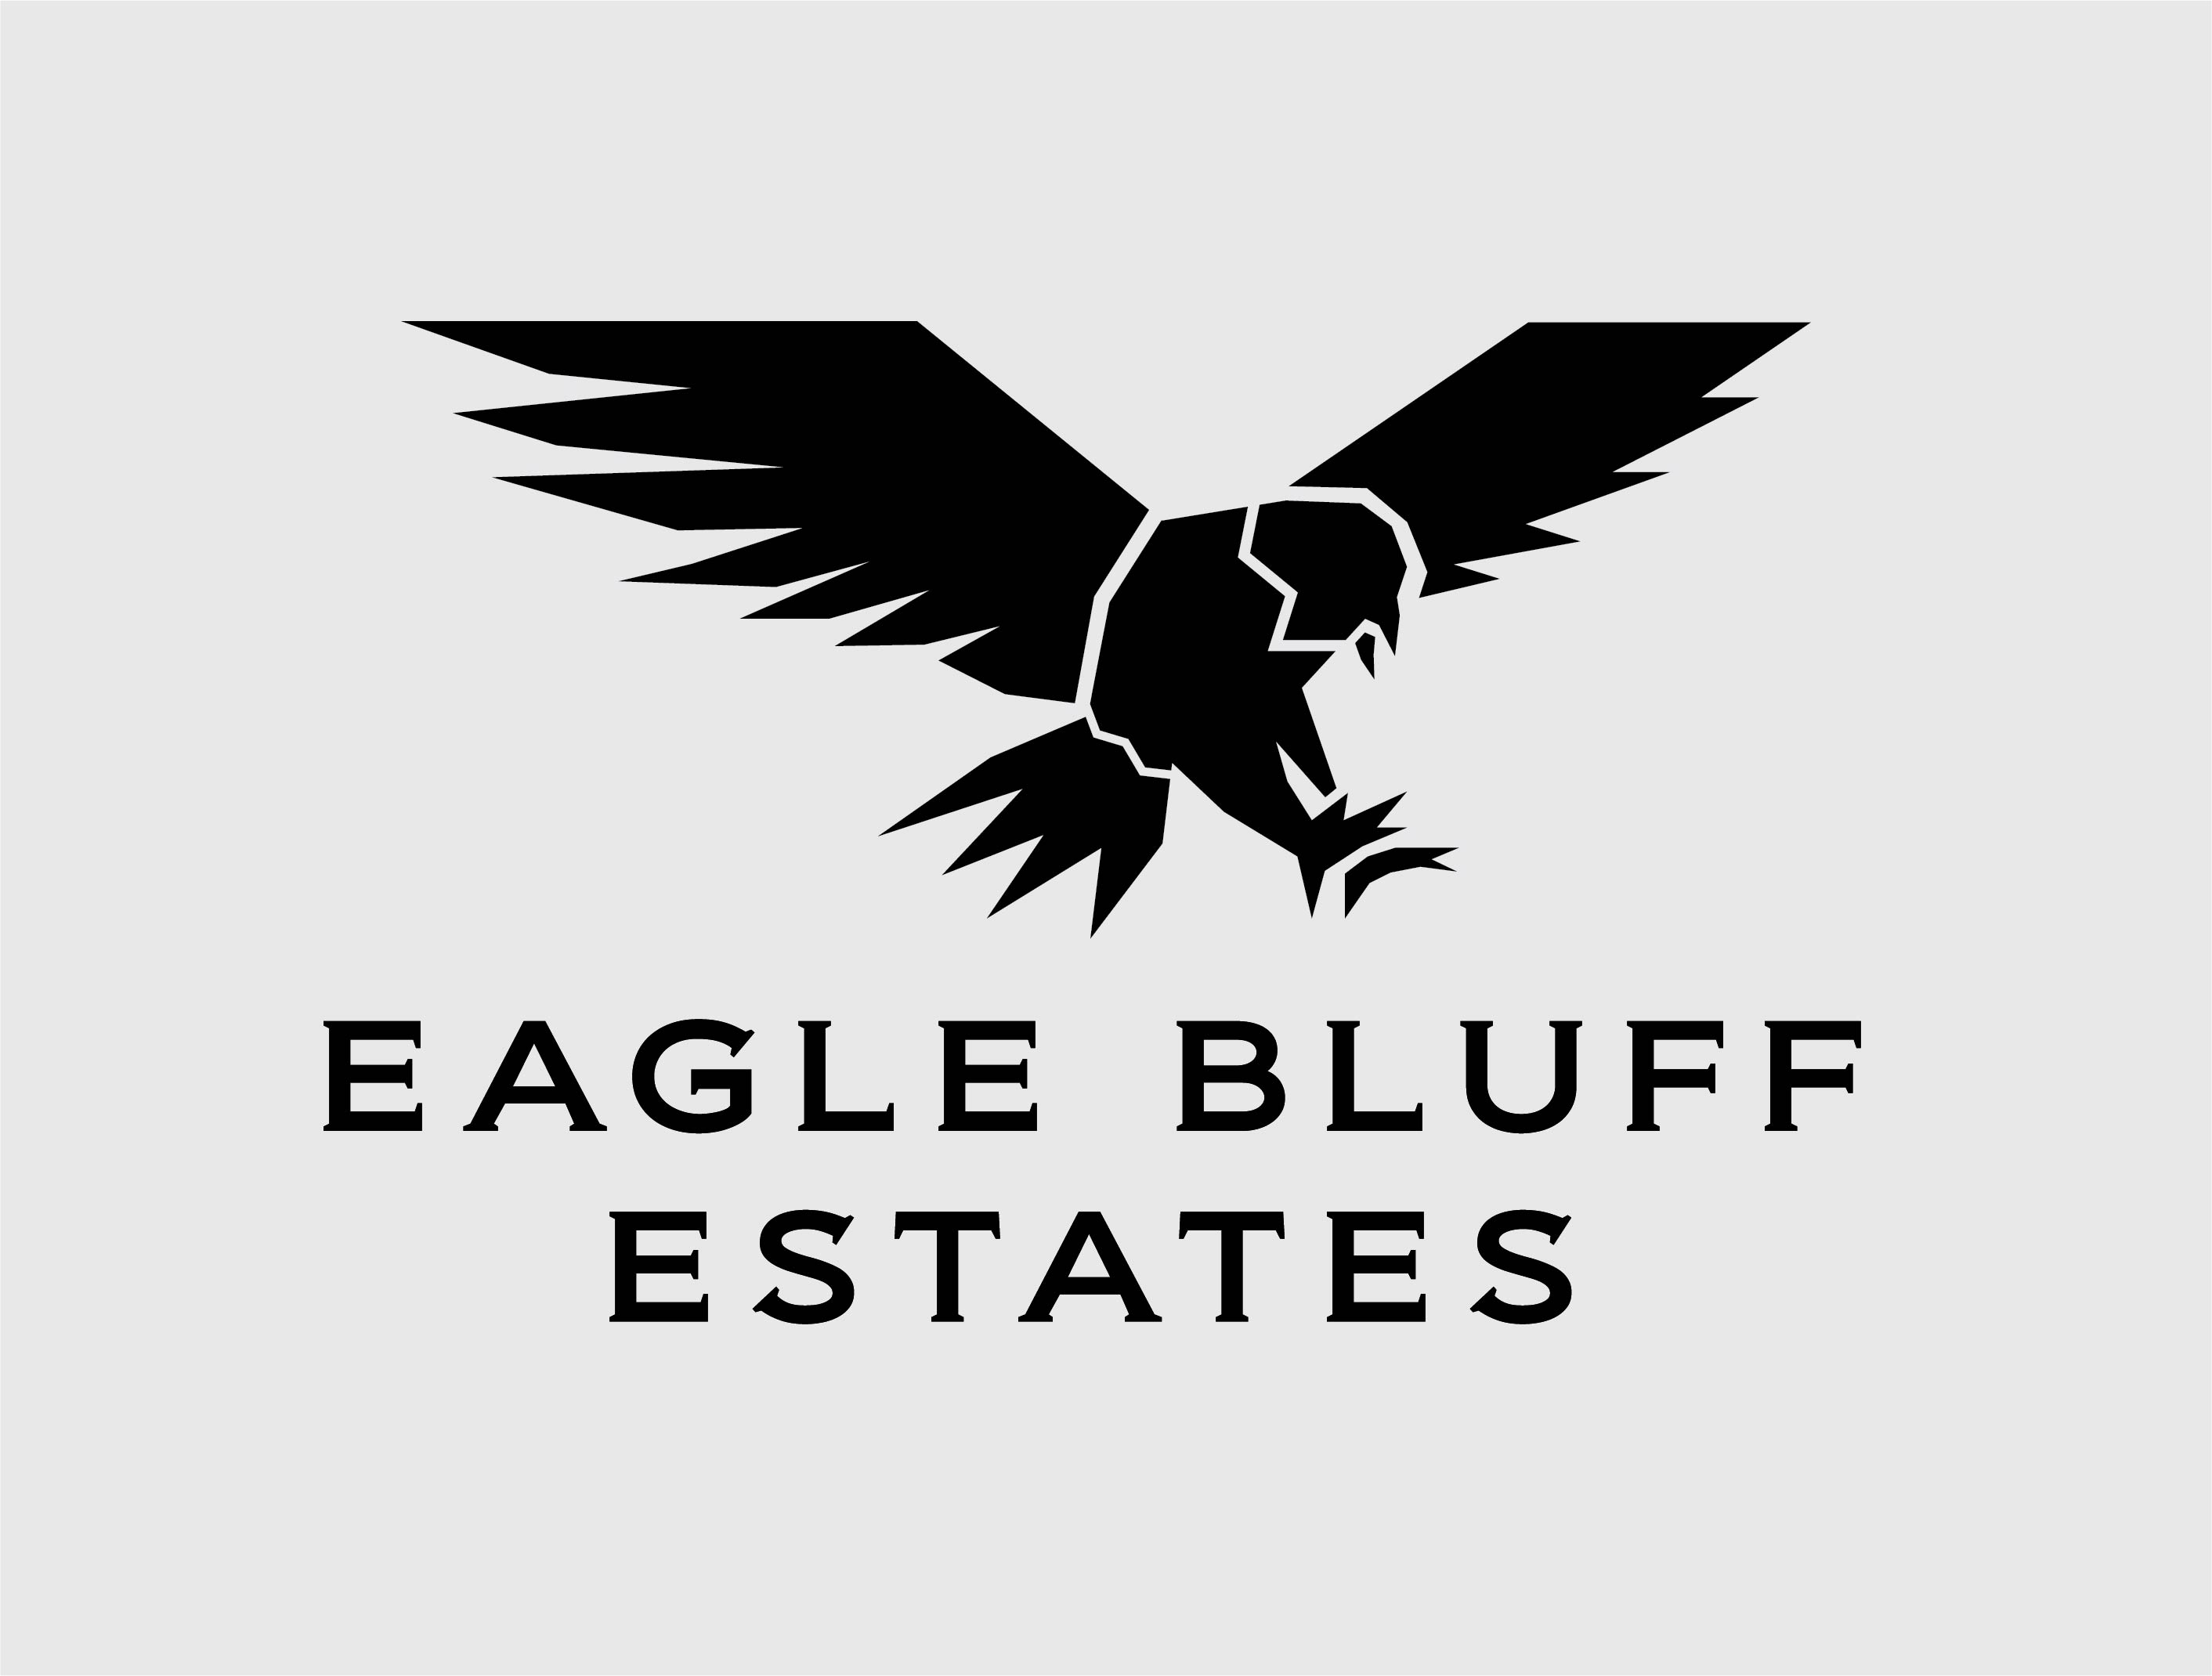 Eagle Bluff Estates